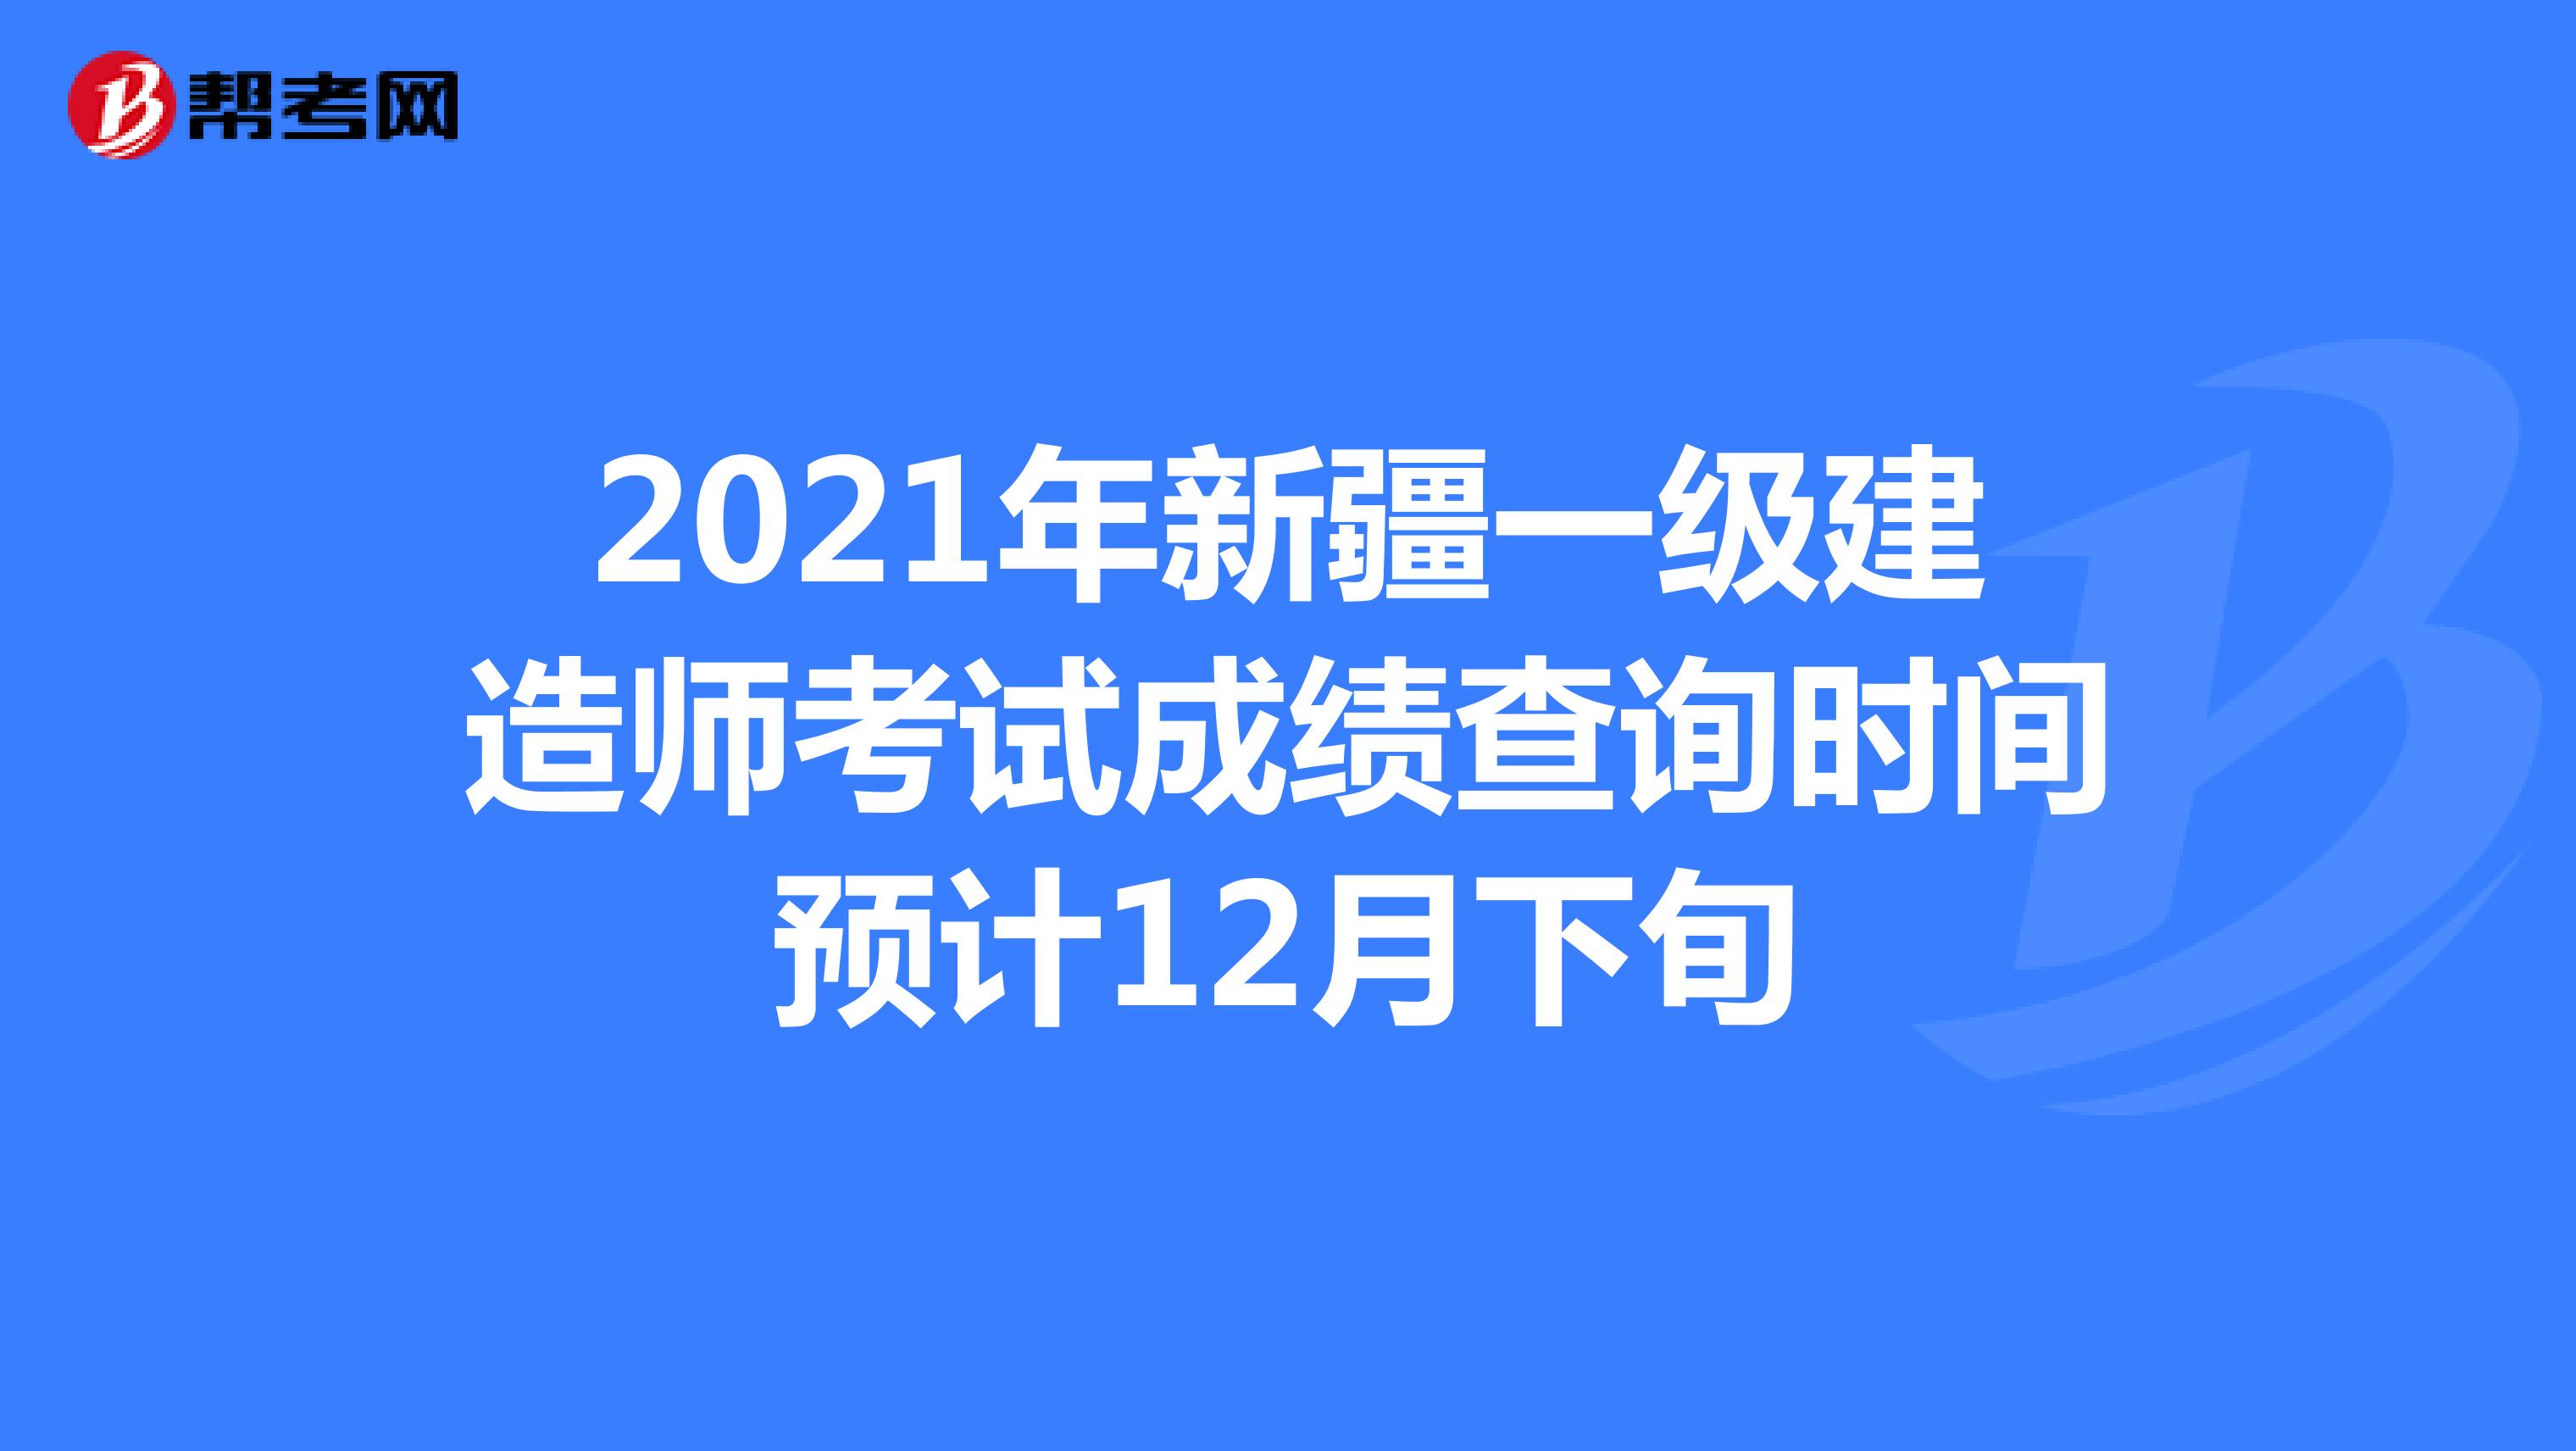 2021年新疆一级建造师考试成绩查询时间预计12月下旬